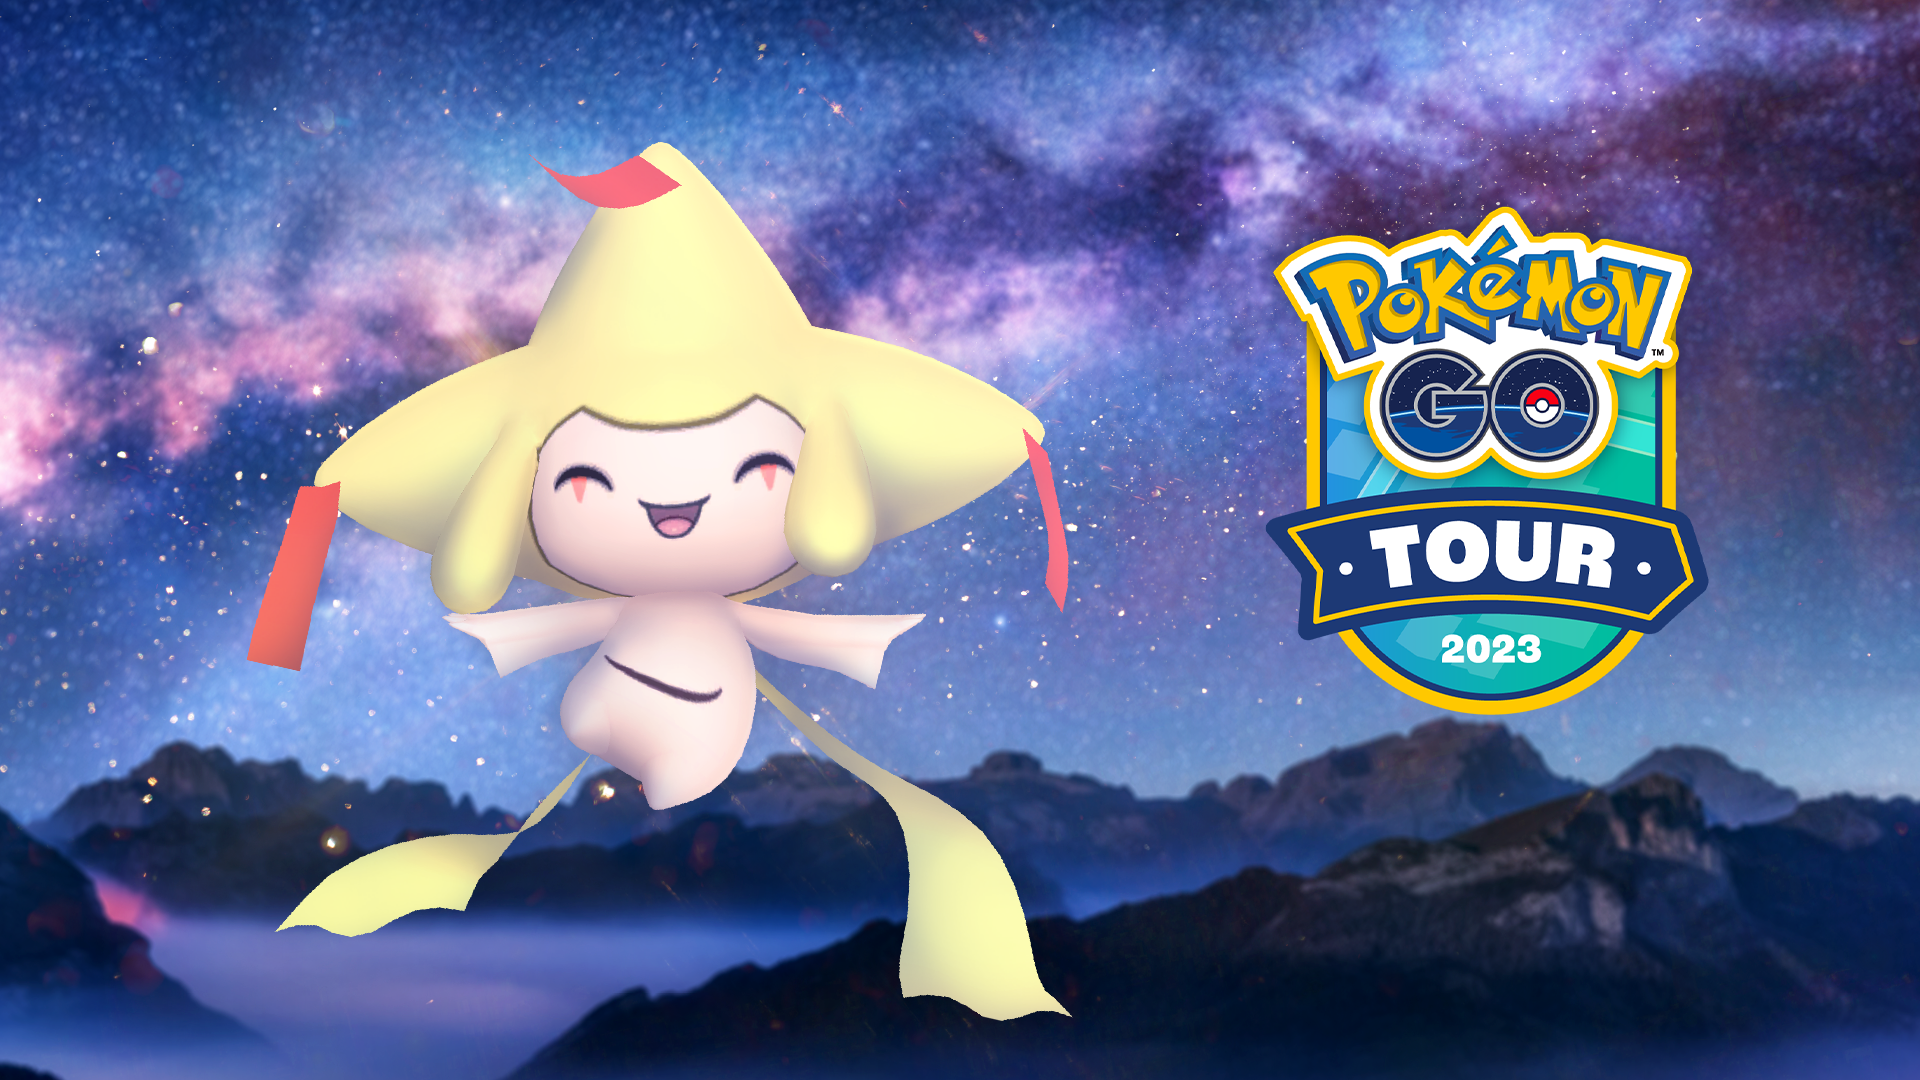 A Shiny Jirachi smiles next to the 2023 Pokémon Go Tour logo